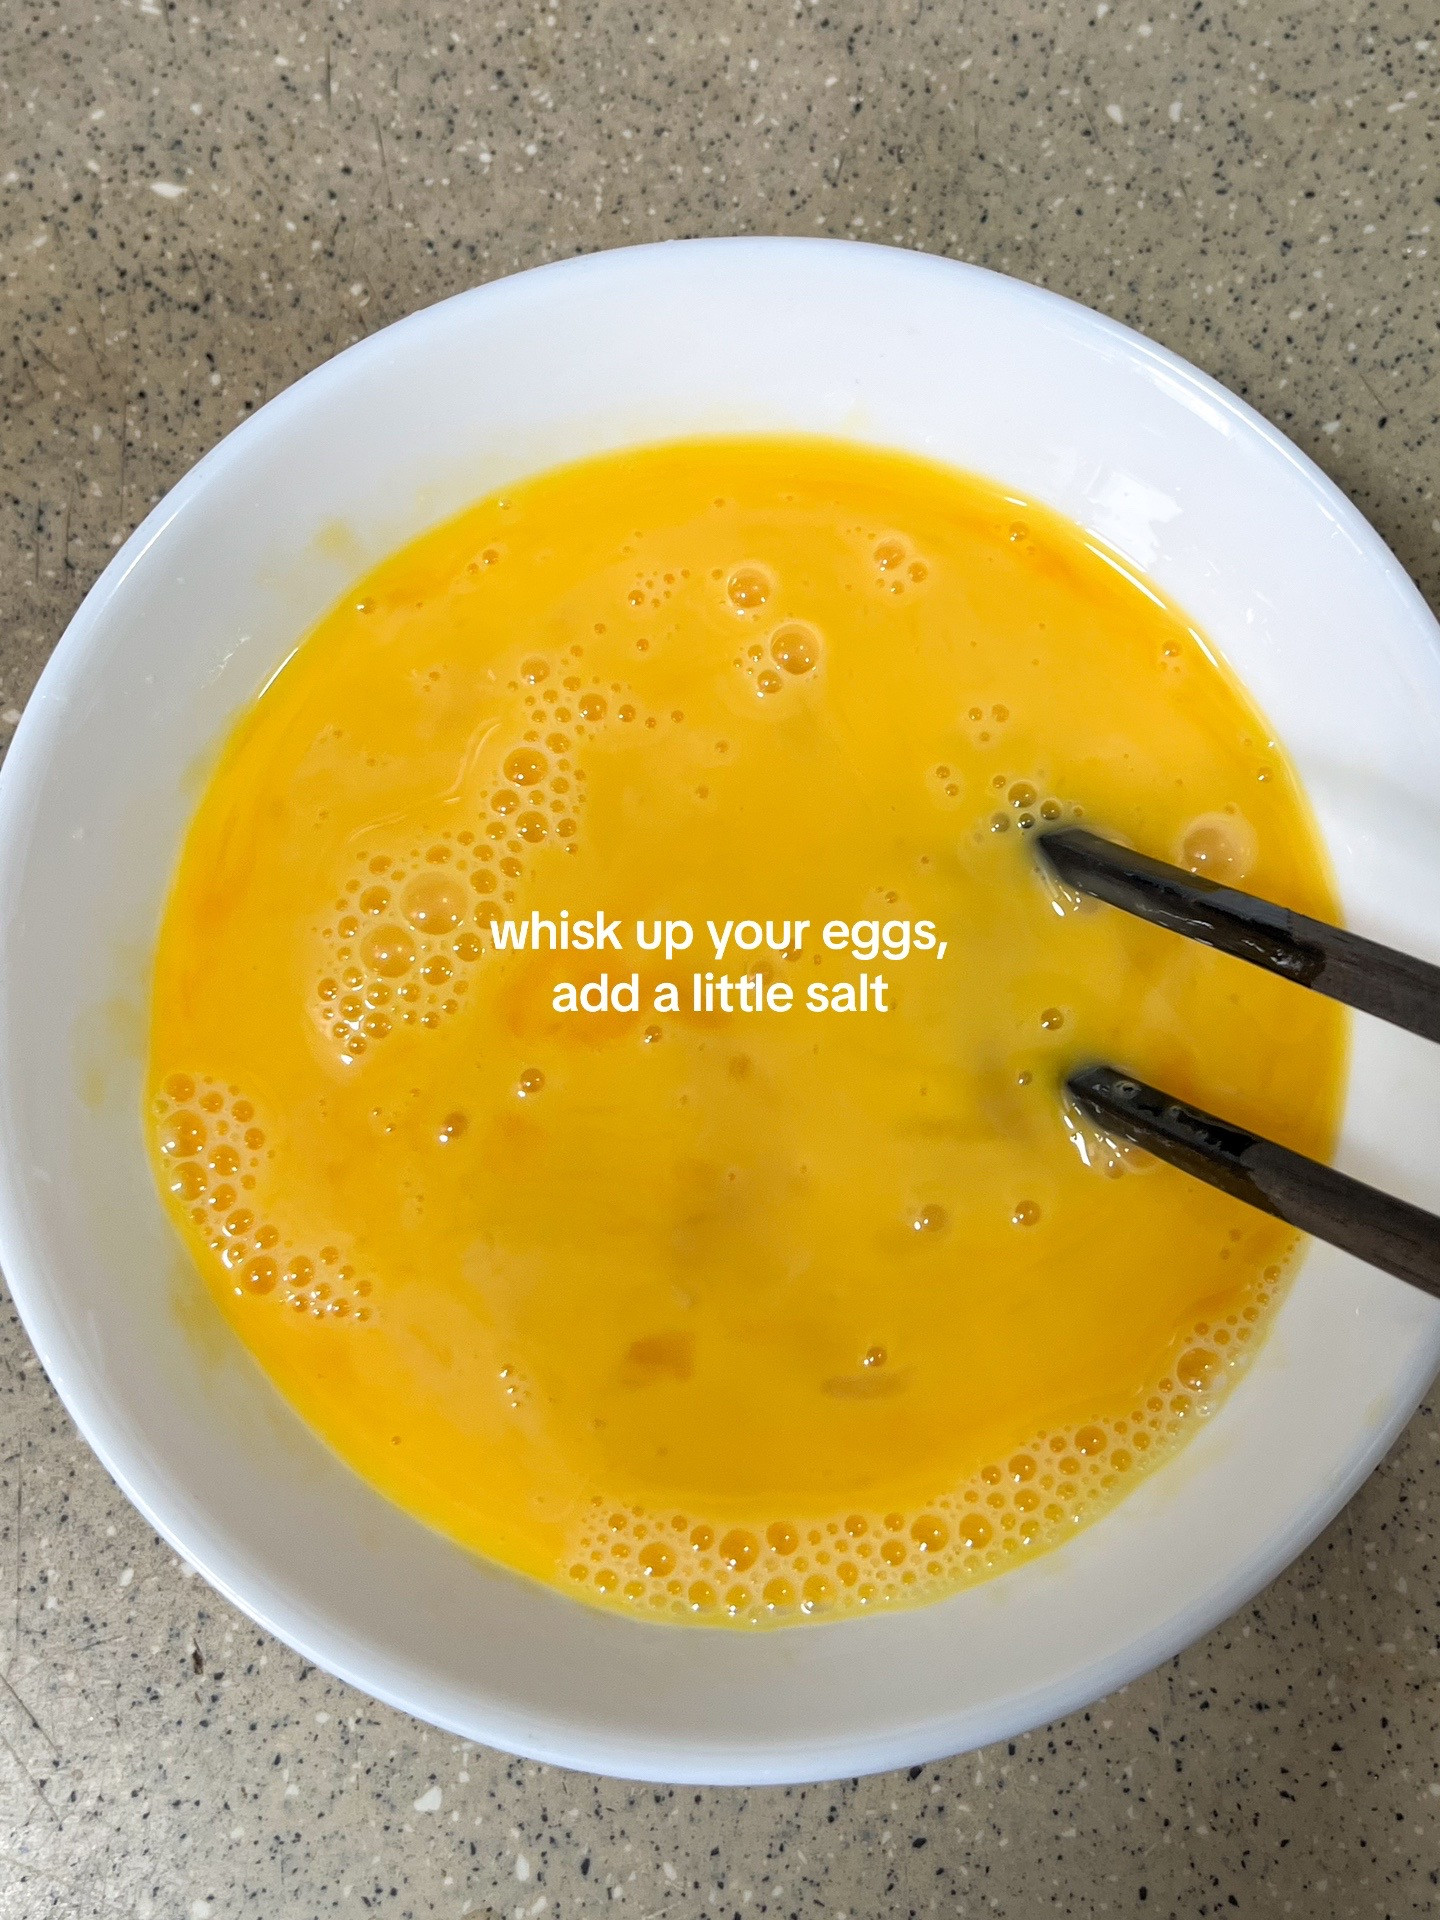 make tomato egg noodle soup